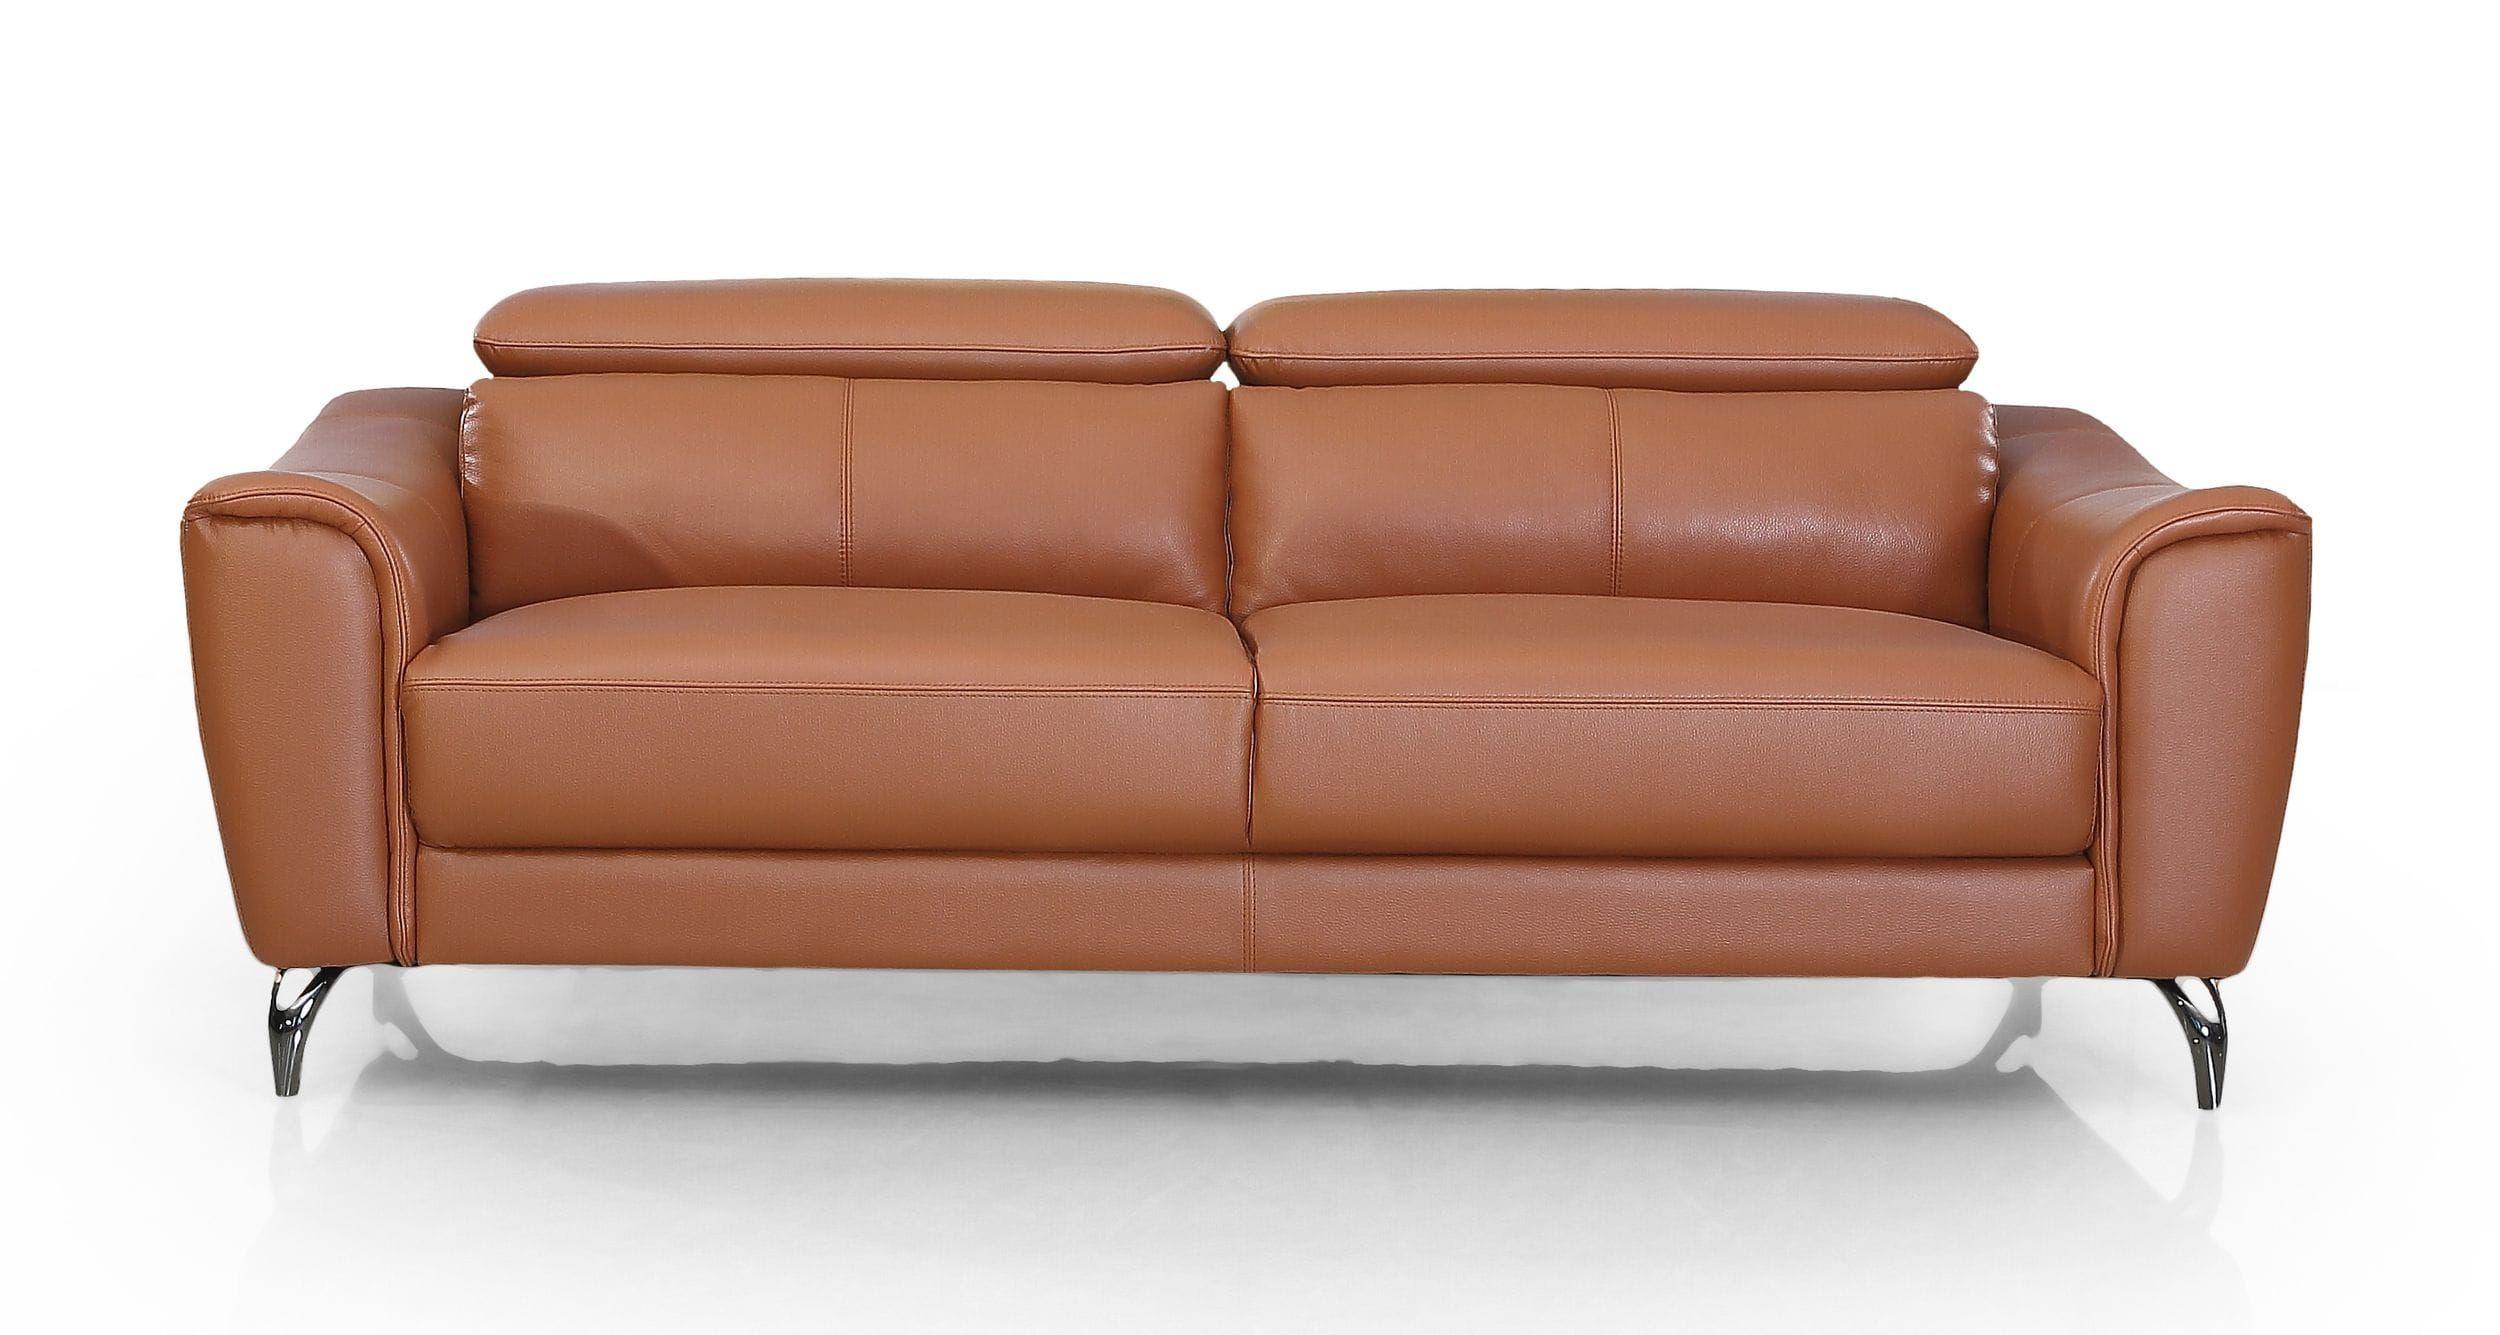 Contemporary, Modern Sofa VGBNS-1803-BRN-S VGBNS-1803-BRN-S in Cognac Leather